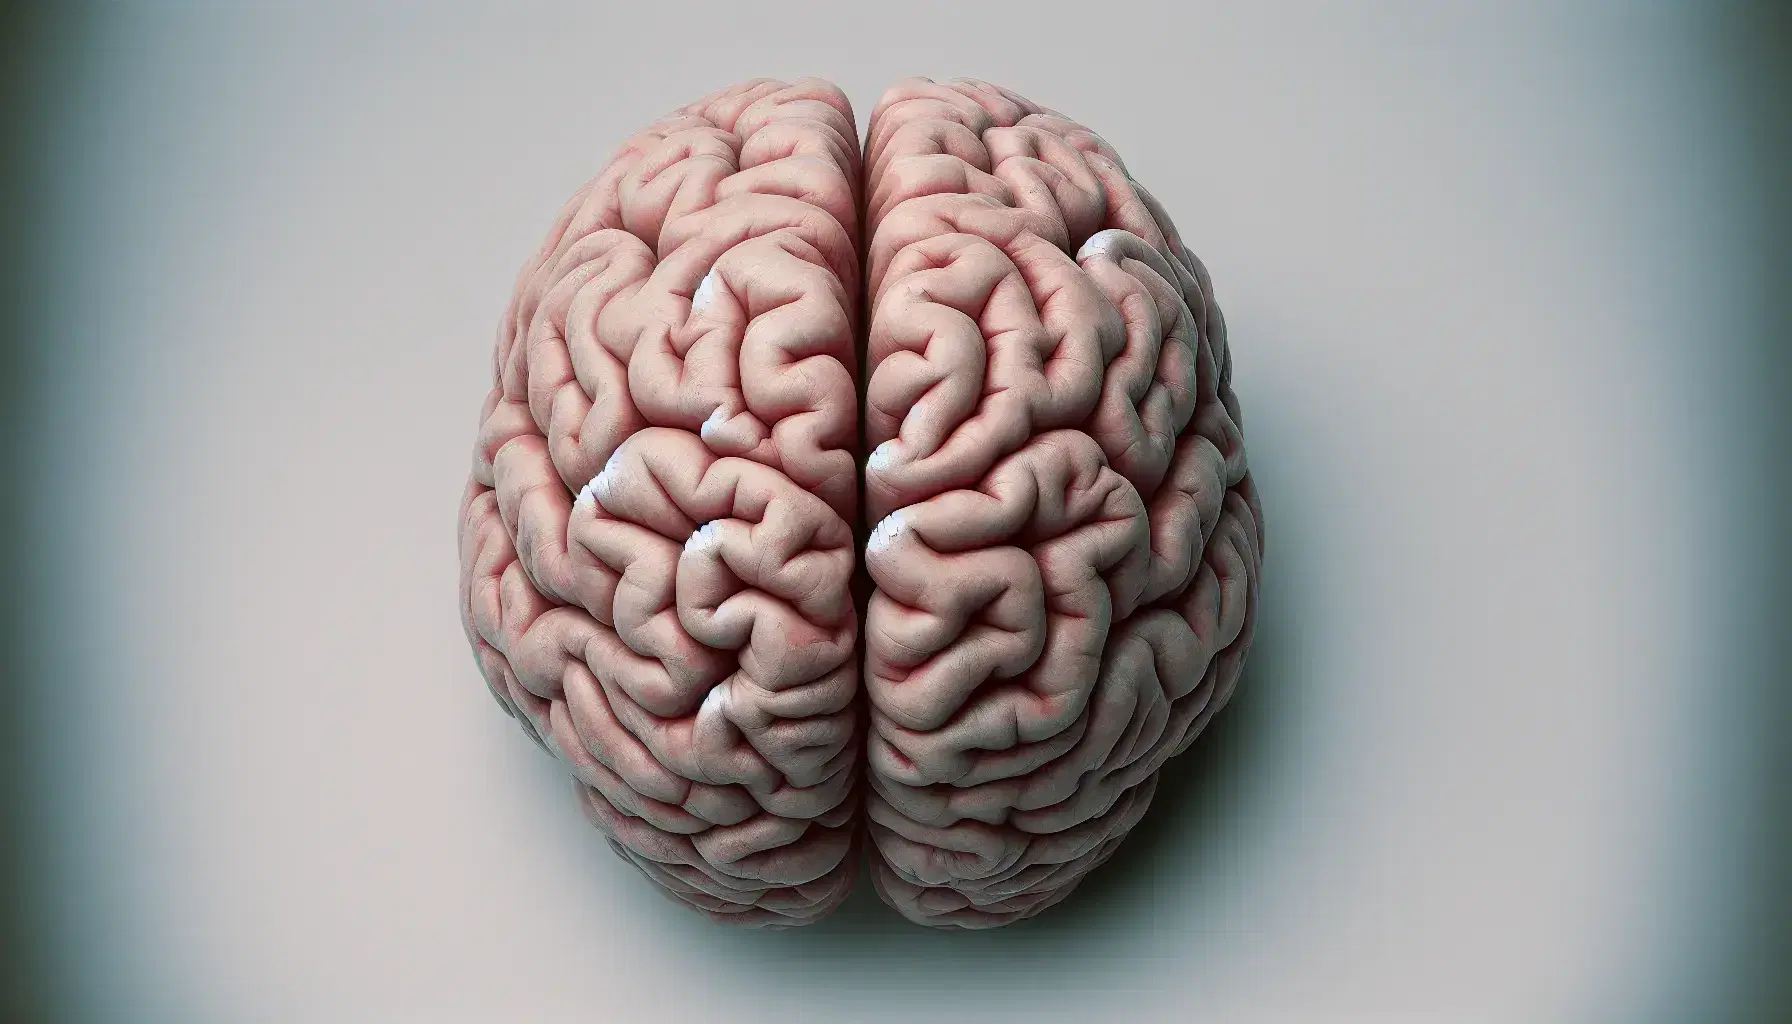 Vista superior de un cerebro humano realista con surcos y textura detallada, mostrando los dos hemisferios y el cerebelo más oscuro.